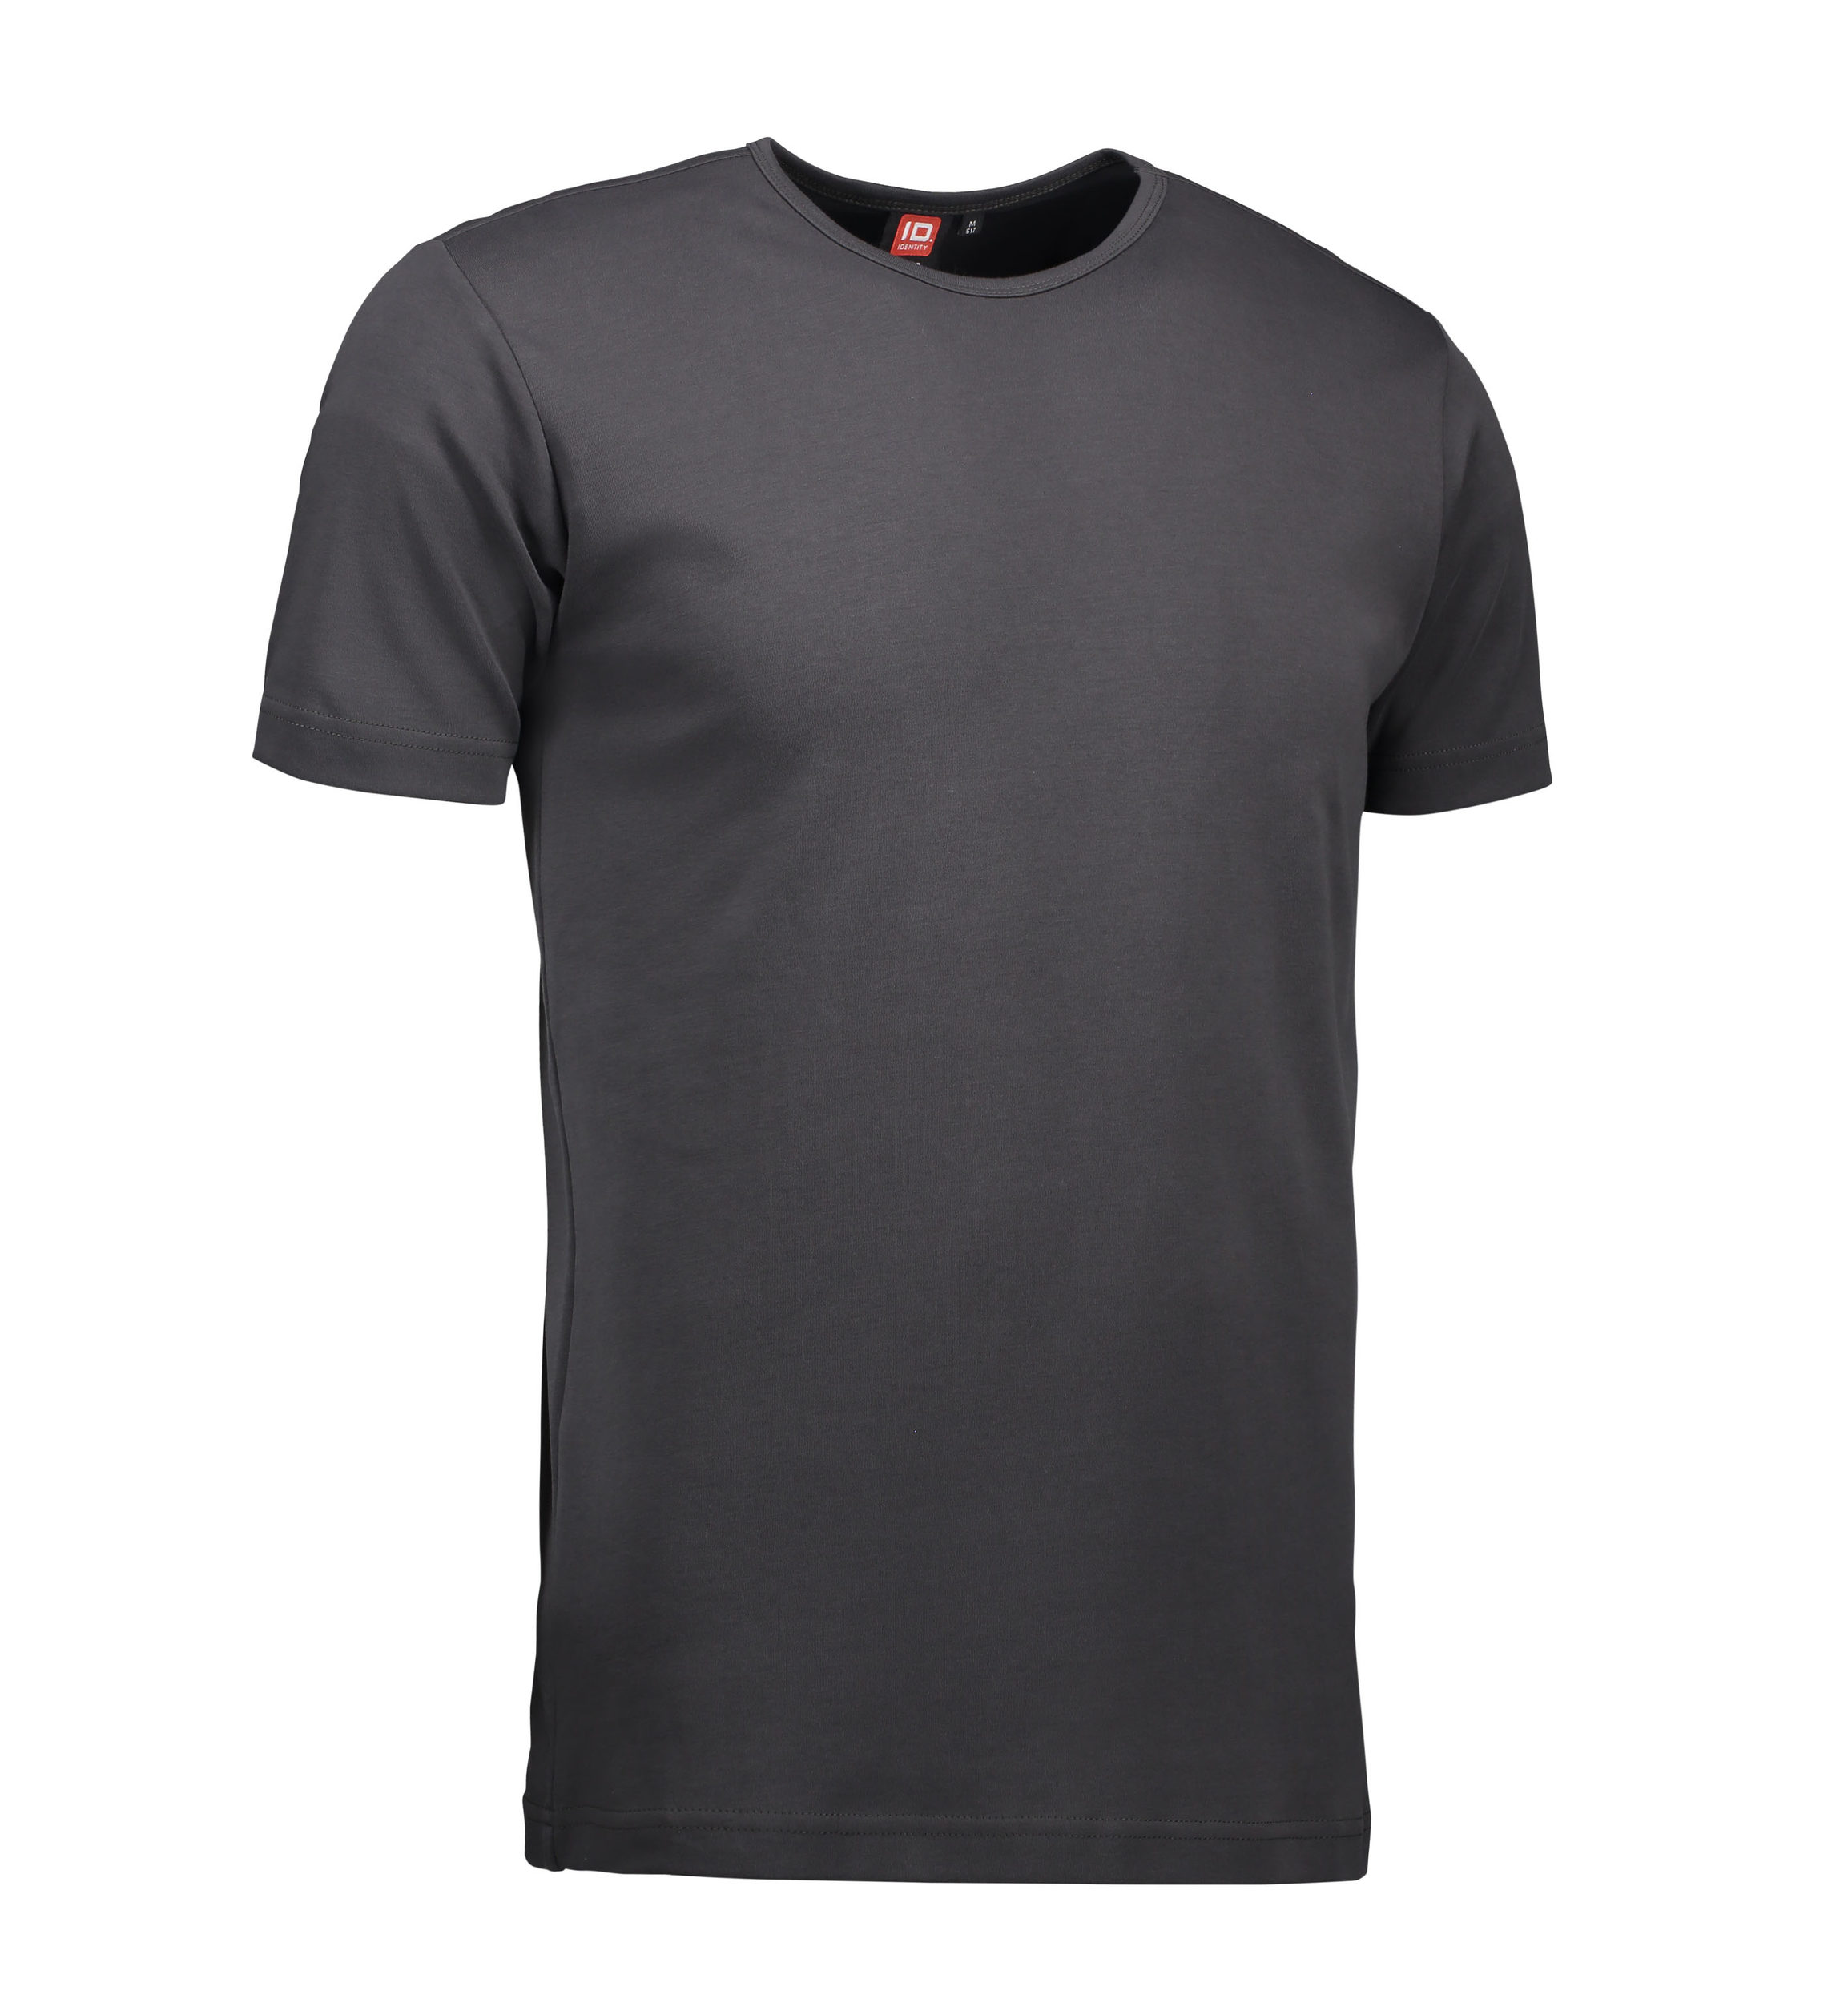 Billede af Koks grå t-shirt med rund hals til mænd - L hos Sygeplejebutikken.dk